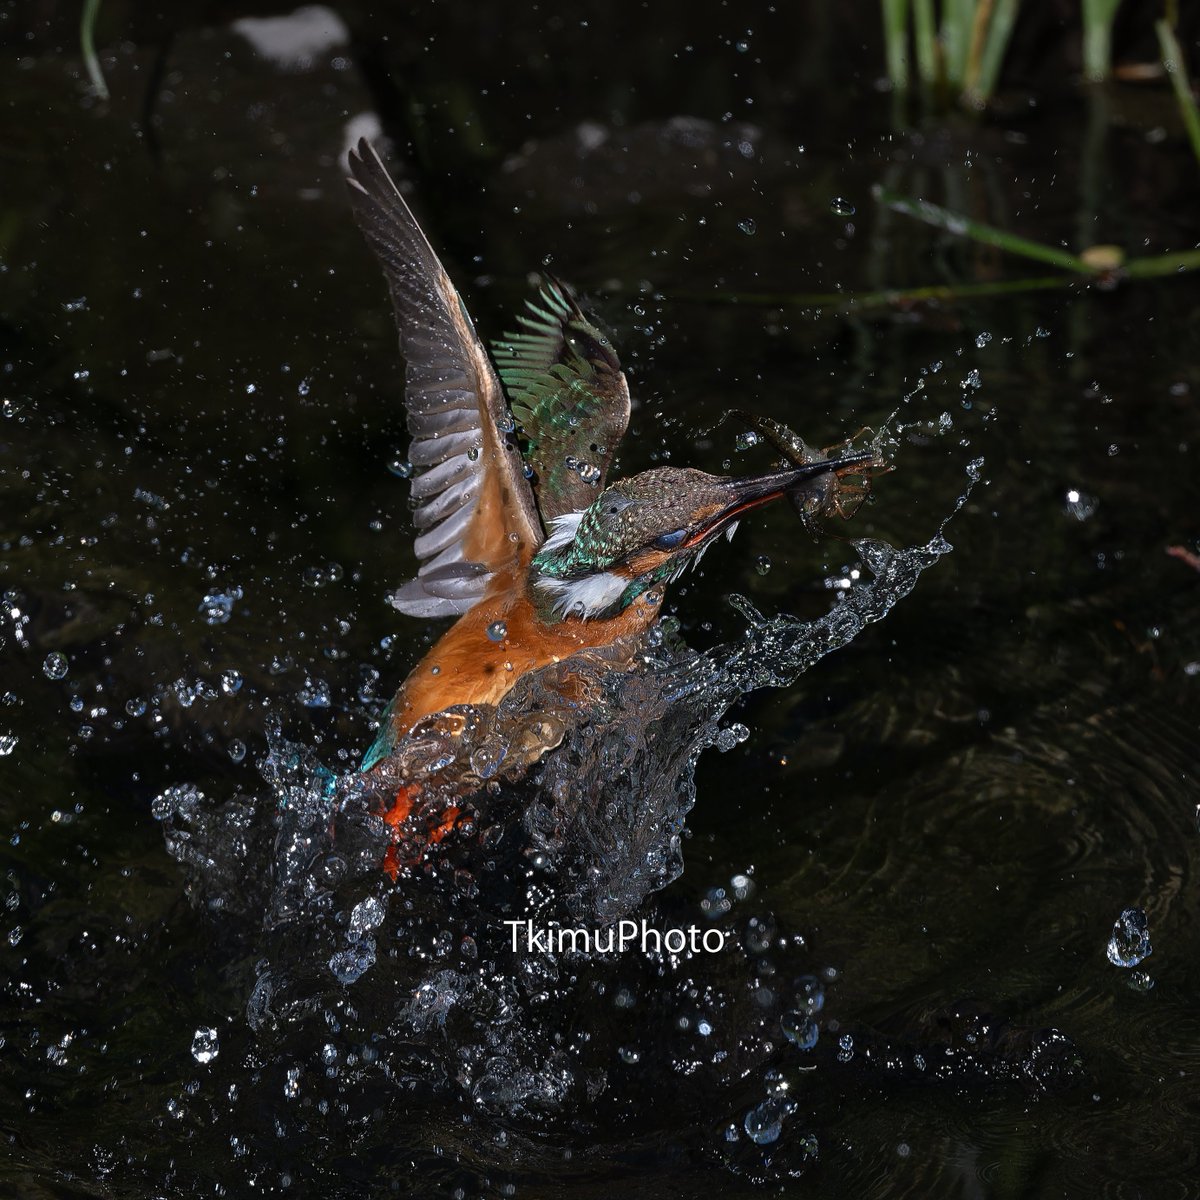 最新レンズのZ663をお試し。
オートフォーカスも解像度も文句なしです。
飛び込み写真を量産です。

Nikon Z8
NIKKOR Z 600mm f/6.3 VR S

#かわせみ #カワセミ #翡翠 #kingfisher #best_birding_japan #Nikon #Z8 #nikoncreators #野鳥 #野鳥撮影 #水しぶきの魔術師